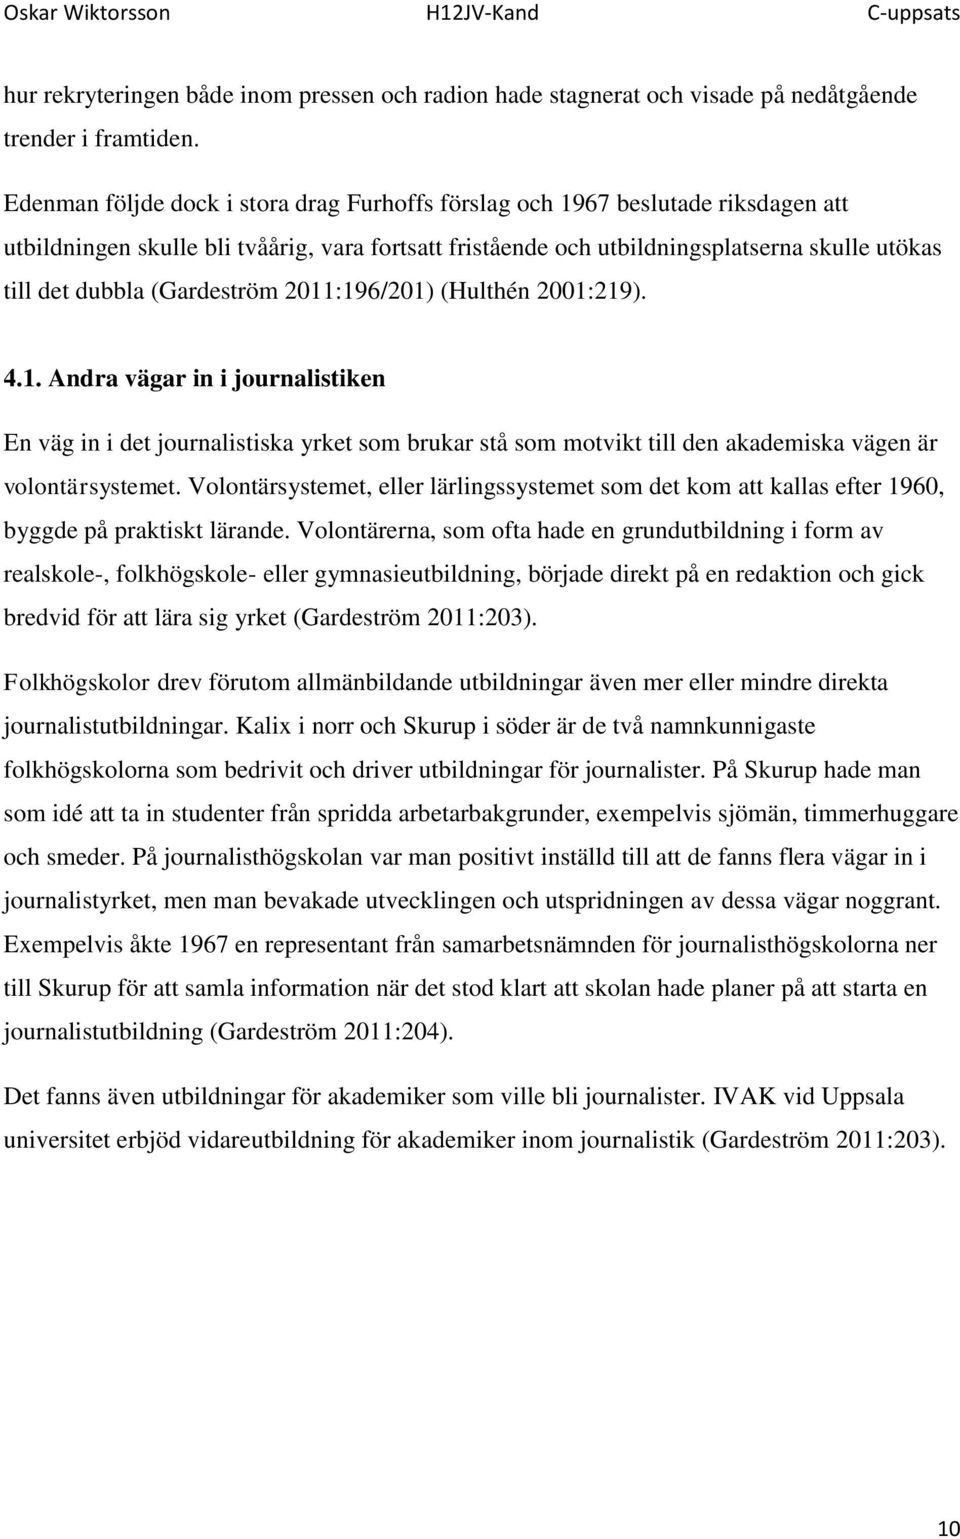 (Gardeström 2011:196/201) (Hulthén 2001:219). 4.1. Andra vägar in i journalistiken En väg in i det journalistiska yrket som brukar stå som motvikt till den akademiska vägen är volontärsystemet.